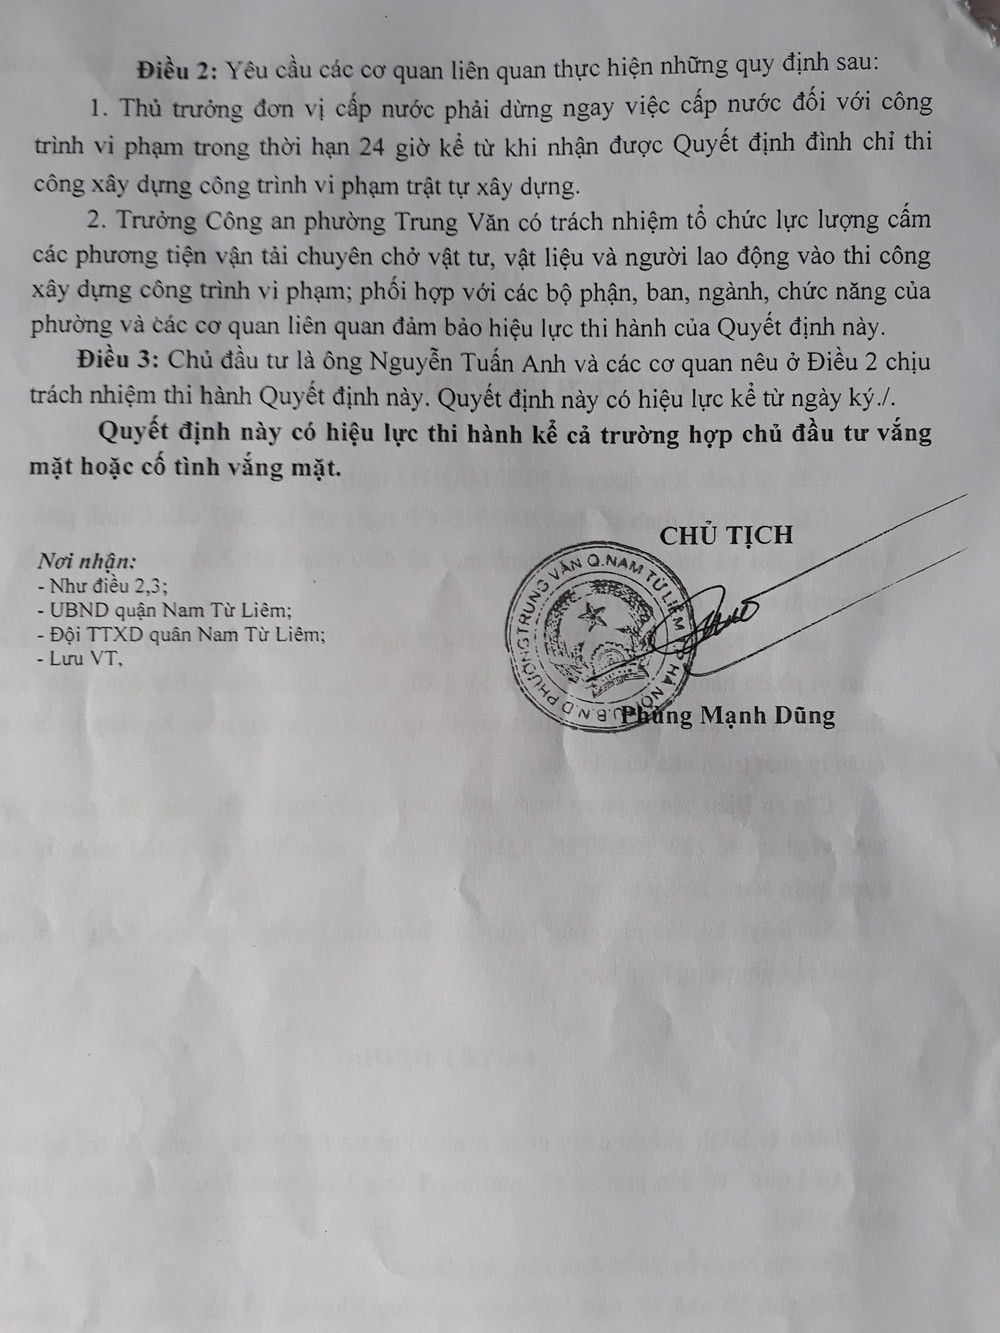 Trung Văn, Hà Nội: Hàng chục nhà xưởng xây dựng trái phép trên đất nông nghiệp